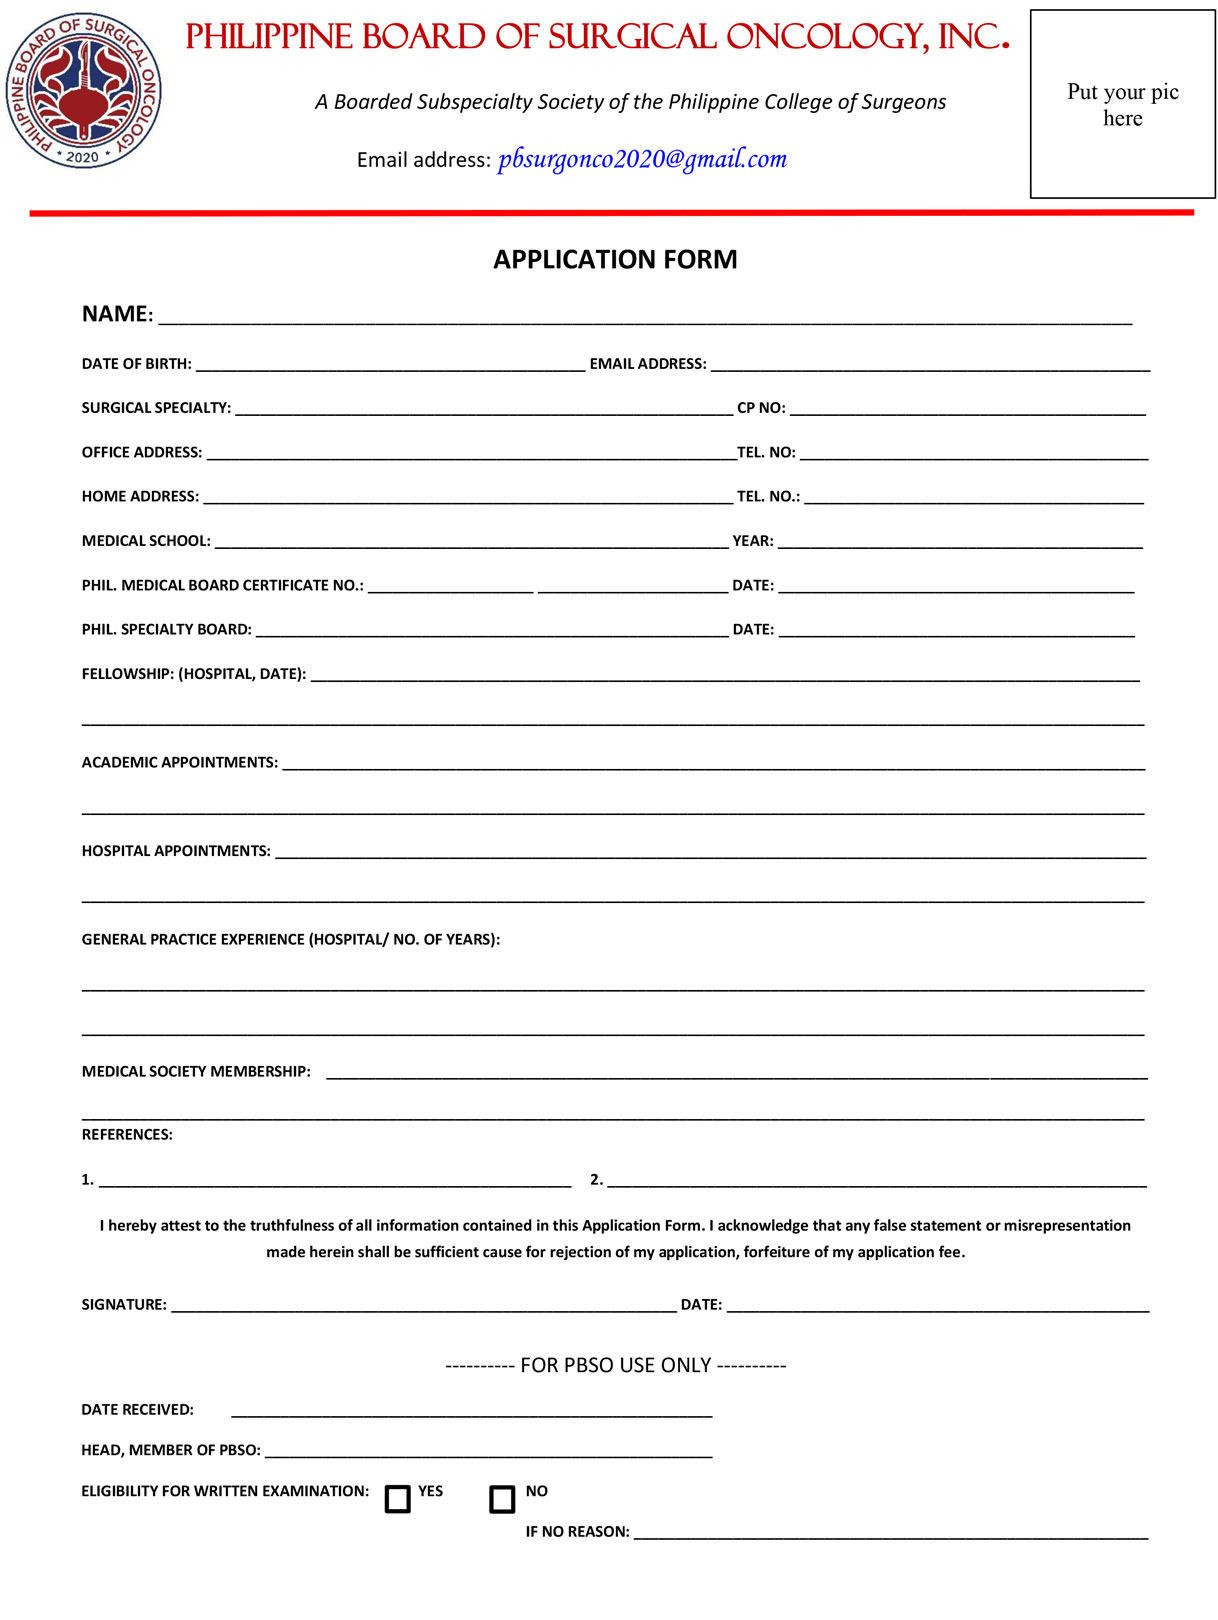 PBSO Application Form PDF